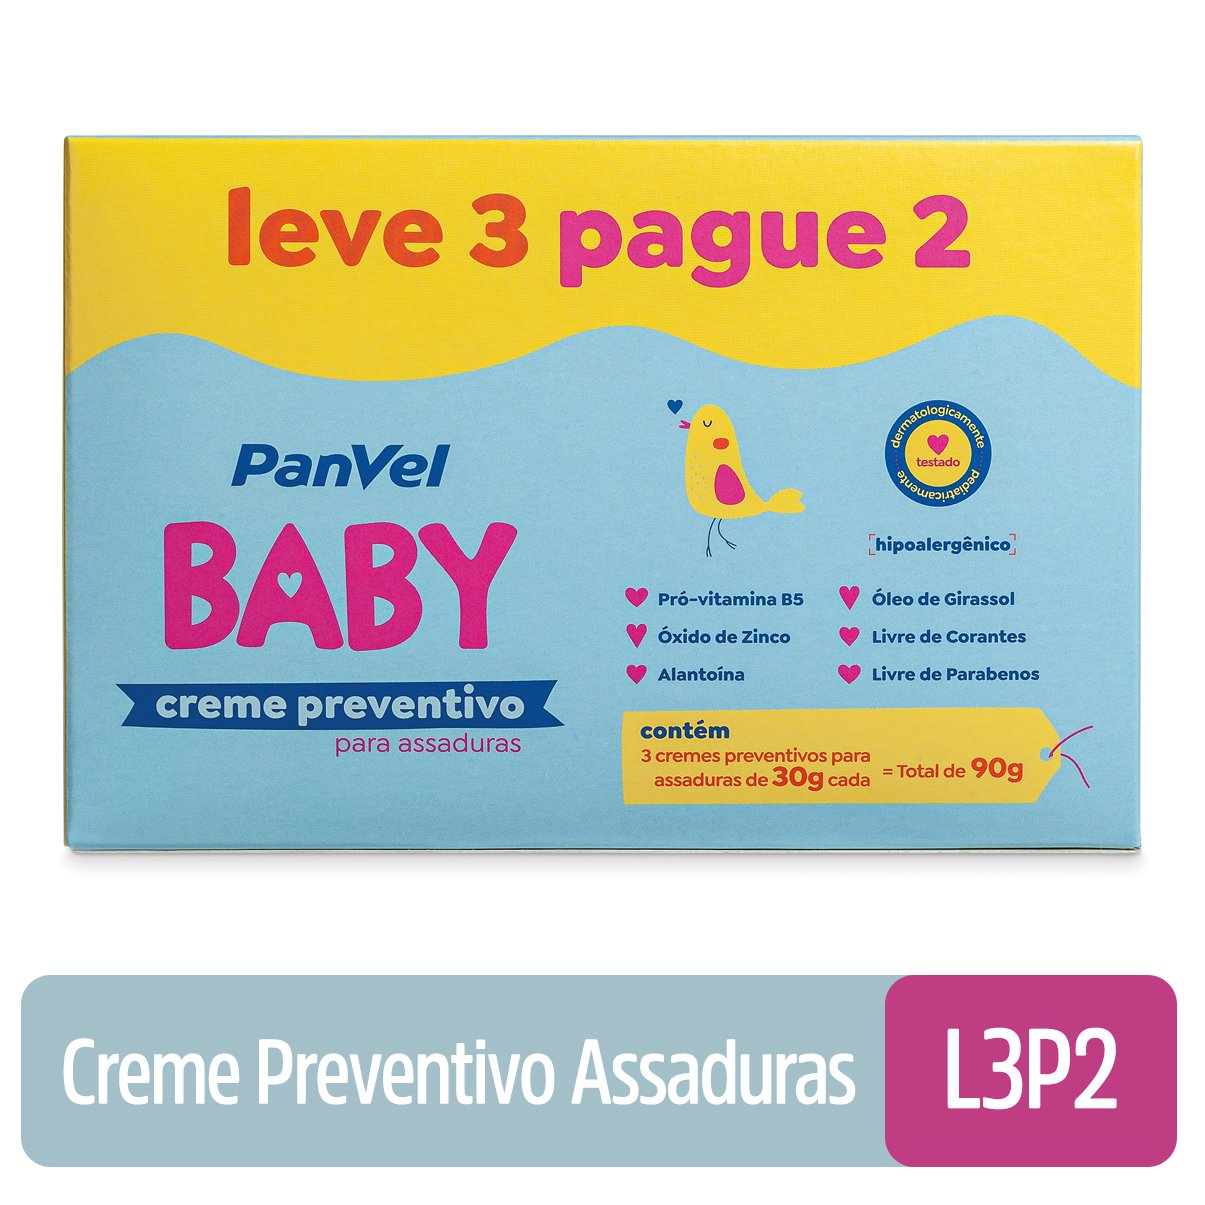 CREME PREVENTIVO PARA ASSADURAS PANVEL BABY LEVE 3 PAGUE 2 30G CADA